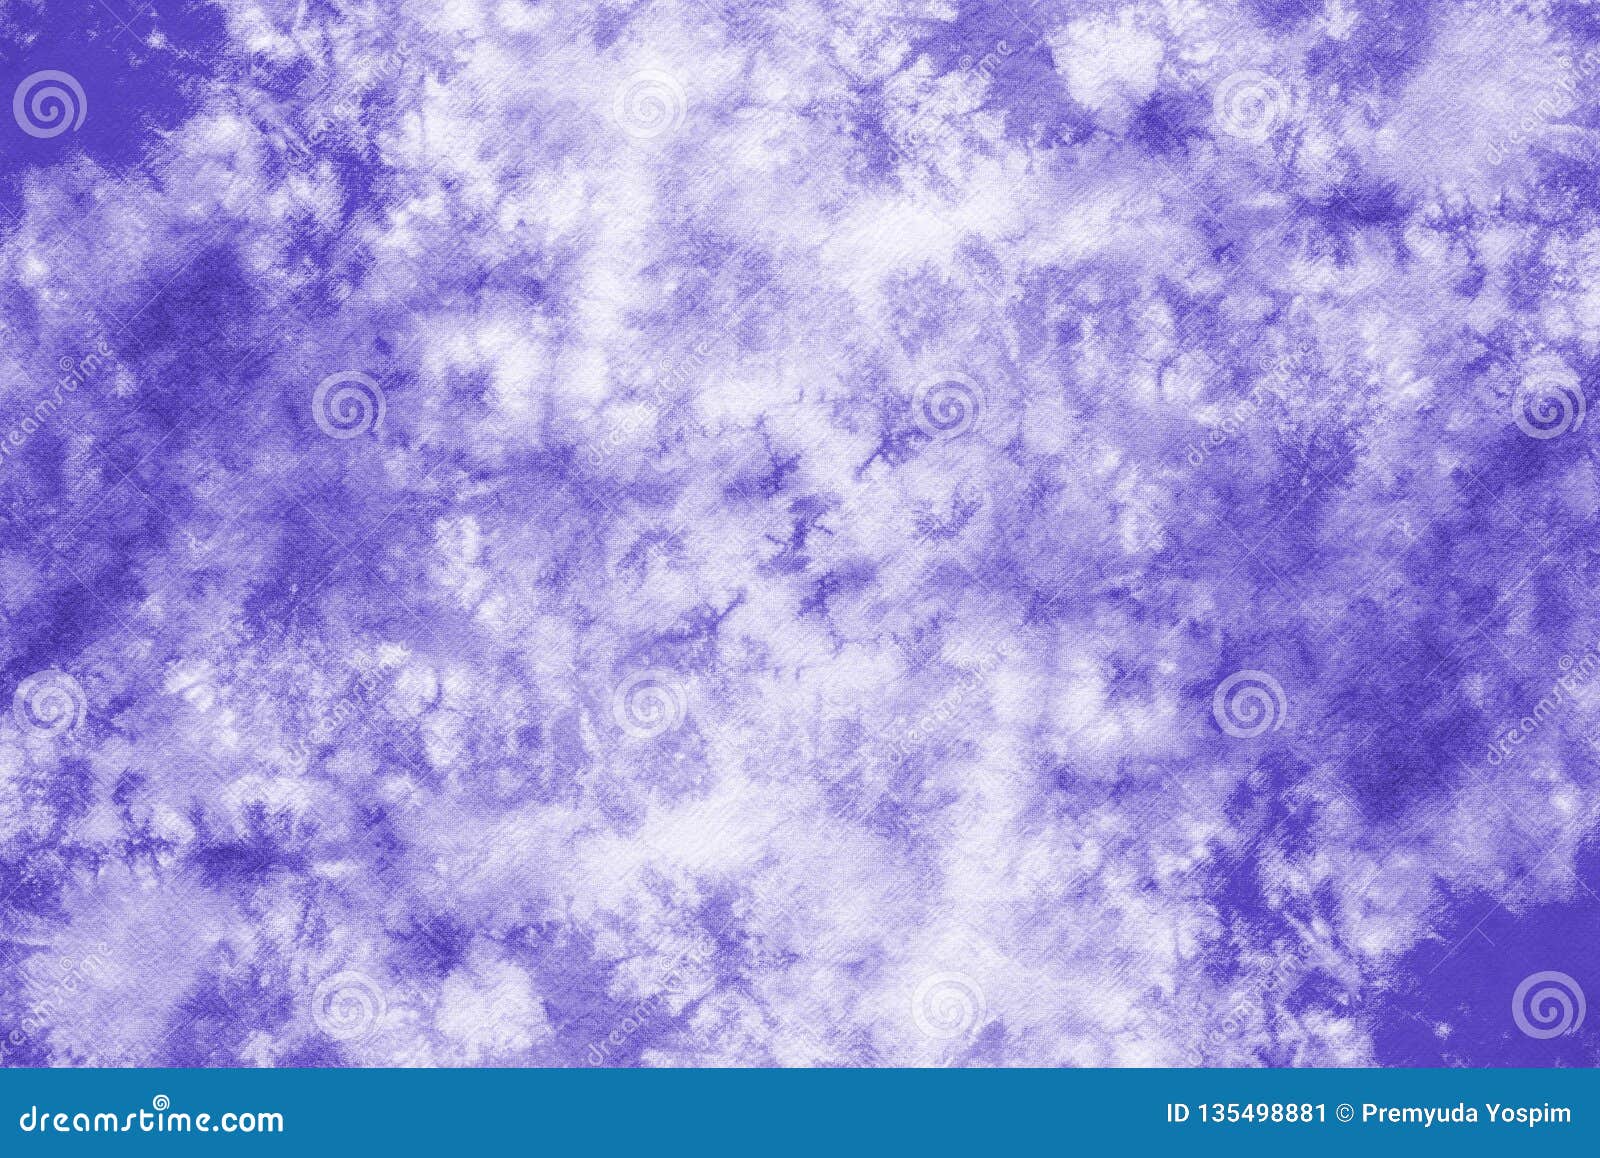 tie dye background purple